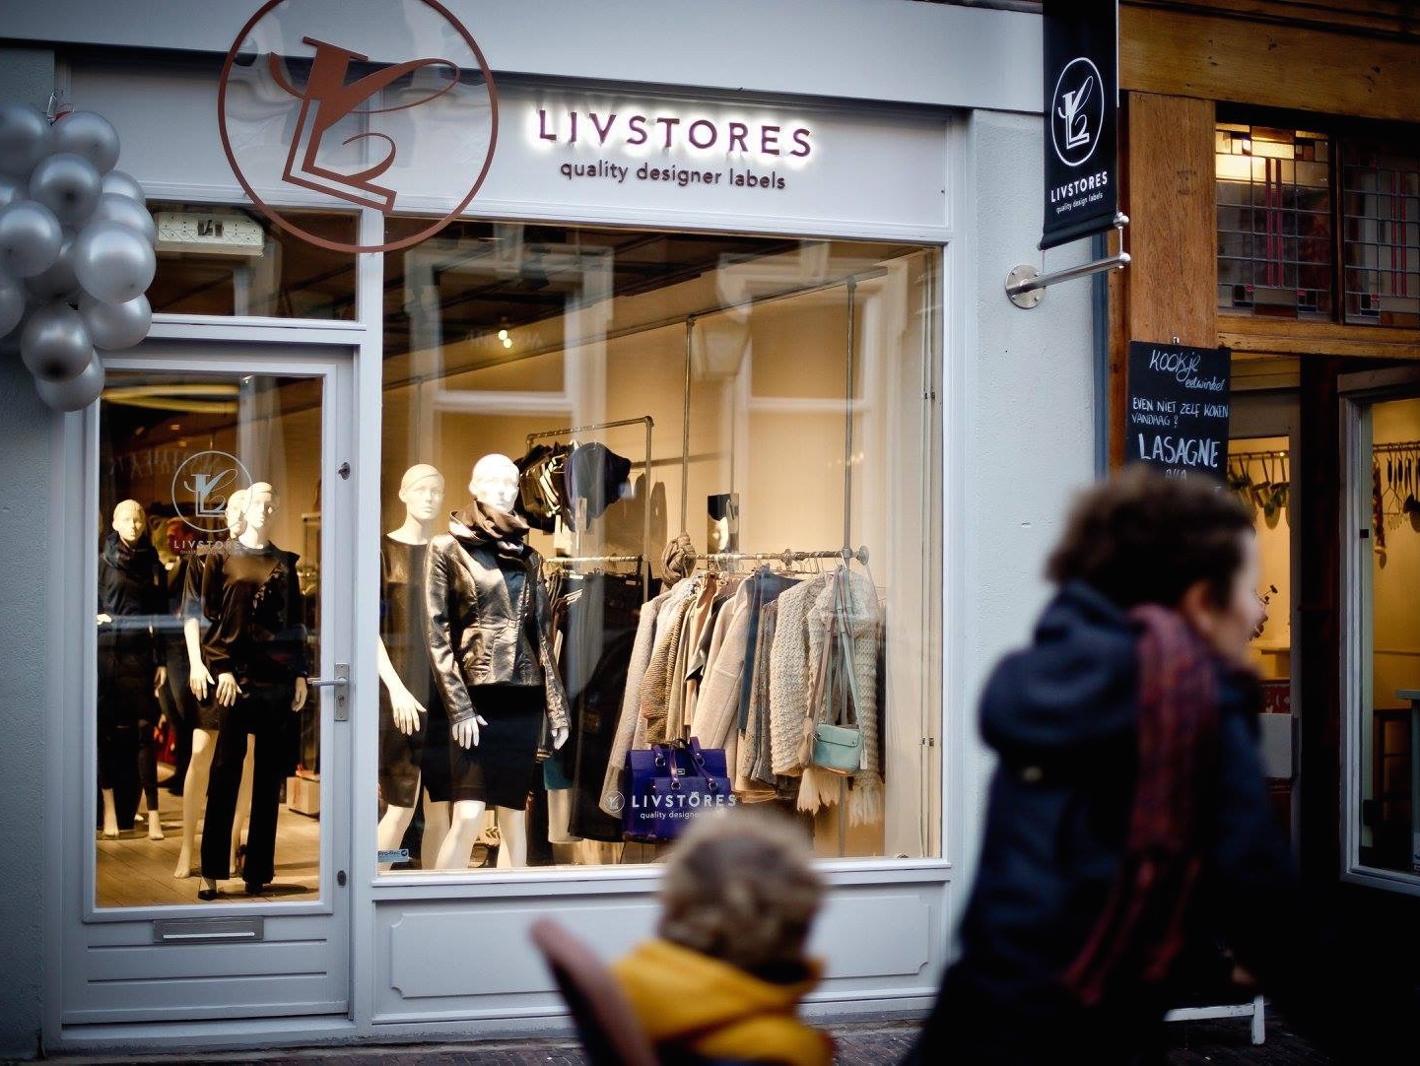 Foto LIVStores in Utrecht, Einkaufen, Spaß beim Einkaufen - #2